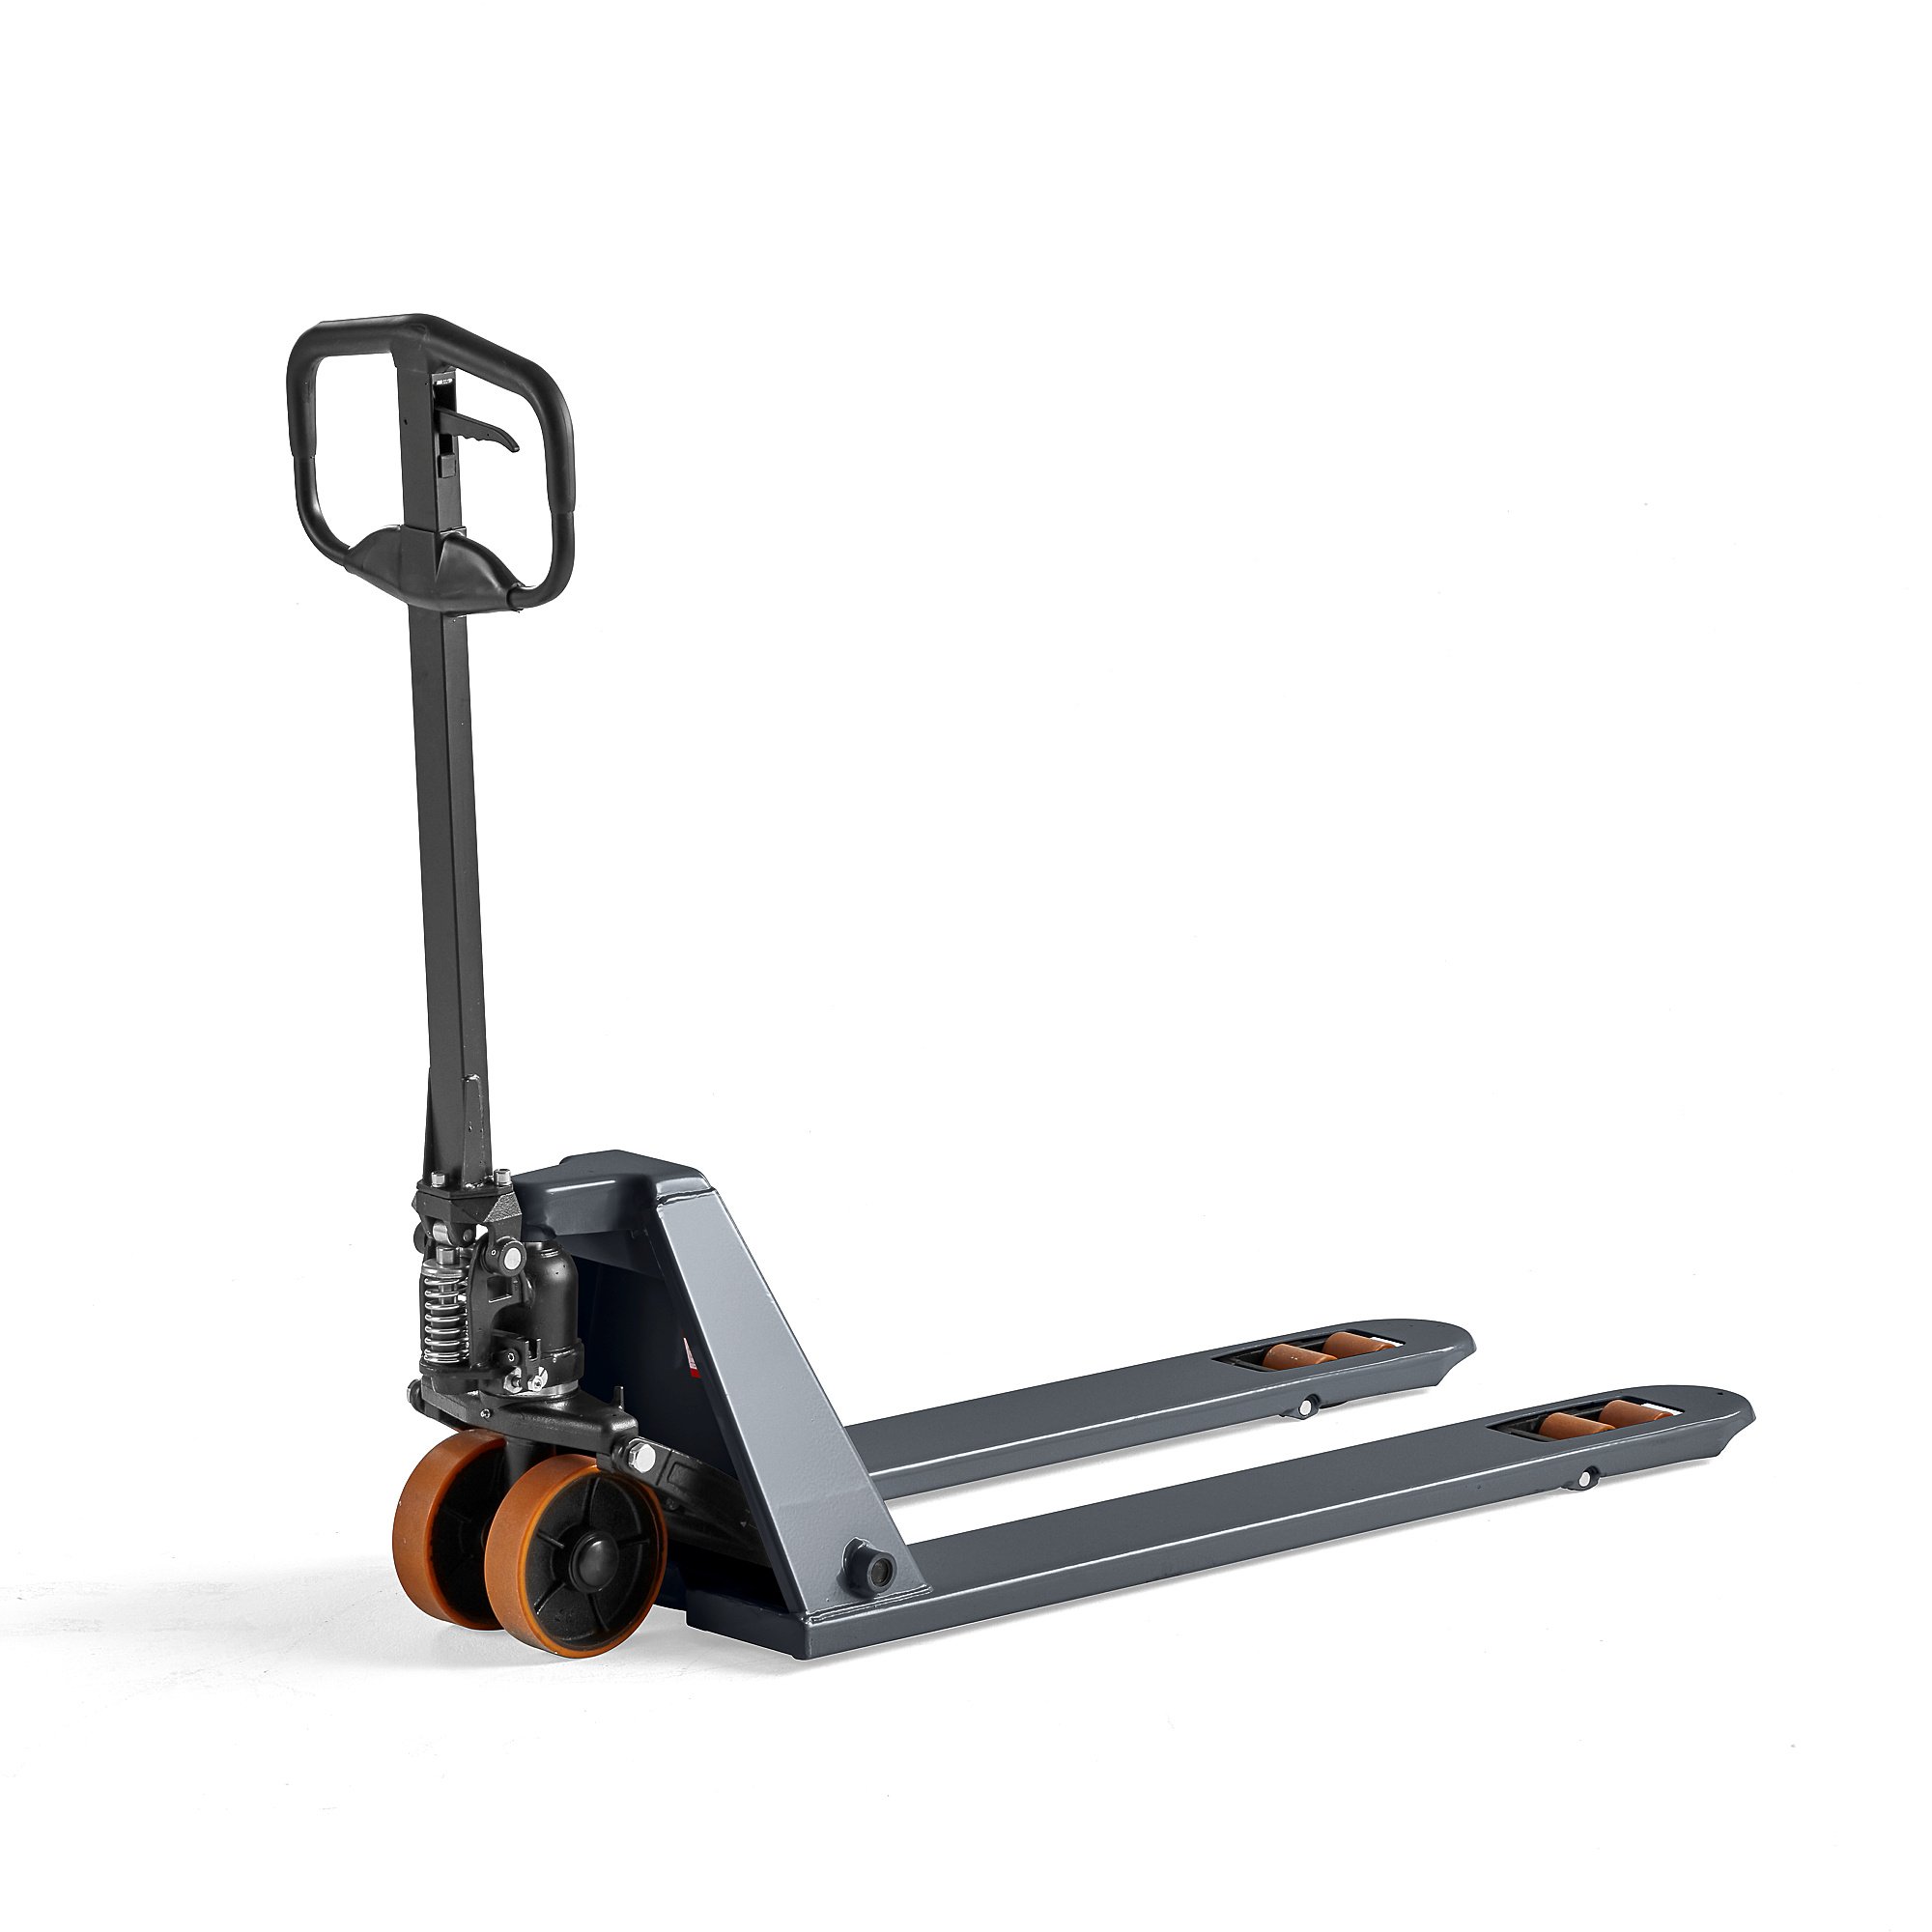 E-shop Paletový vozík ASSIST, 1500 kg, 1150 mm, PU kolieska - tandem